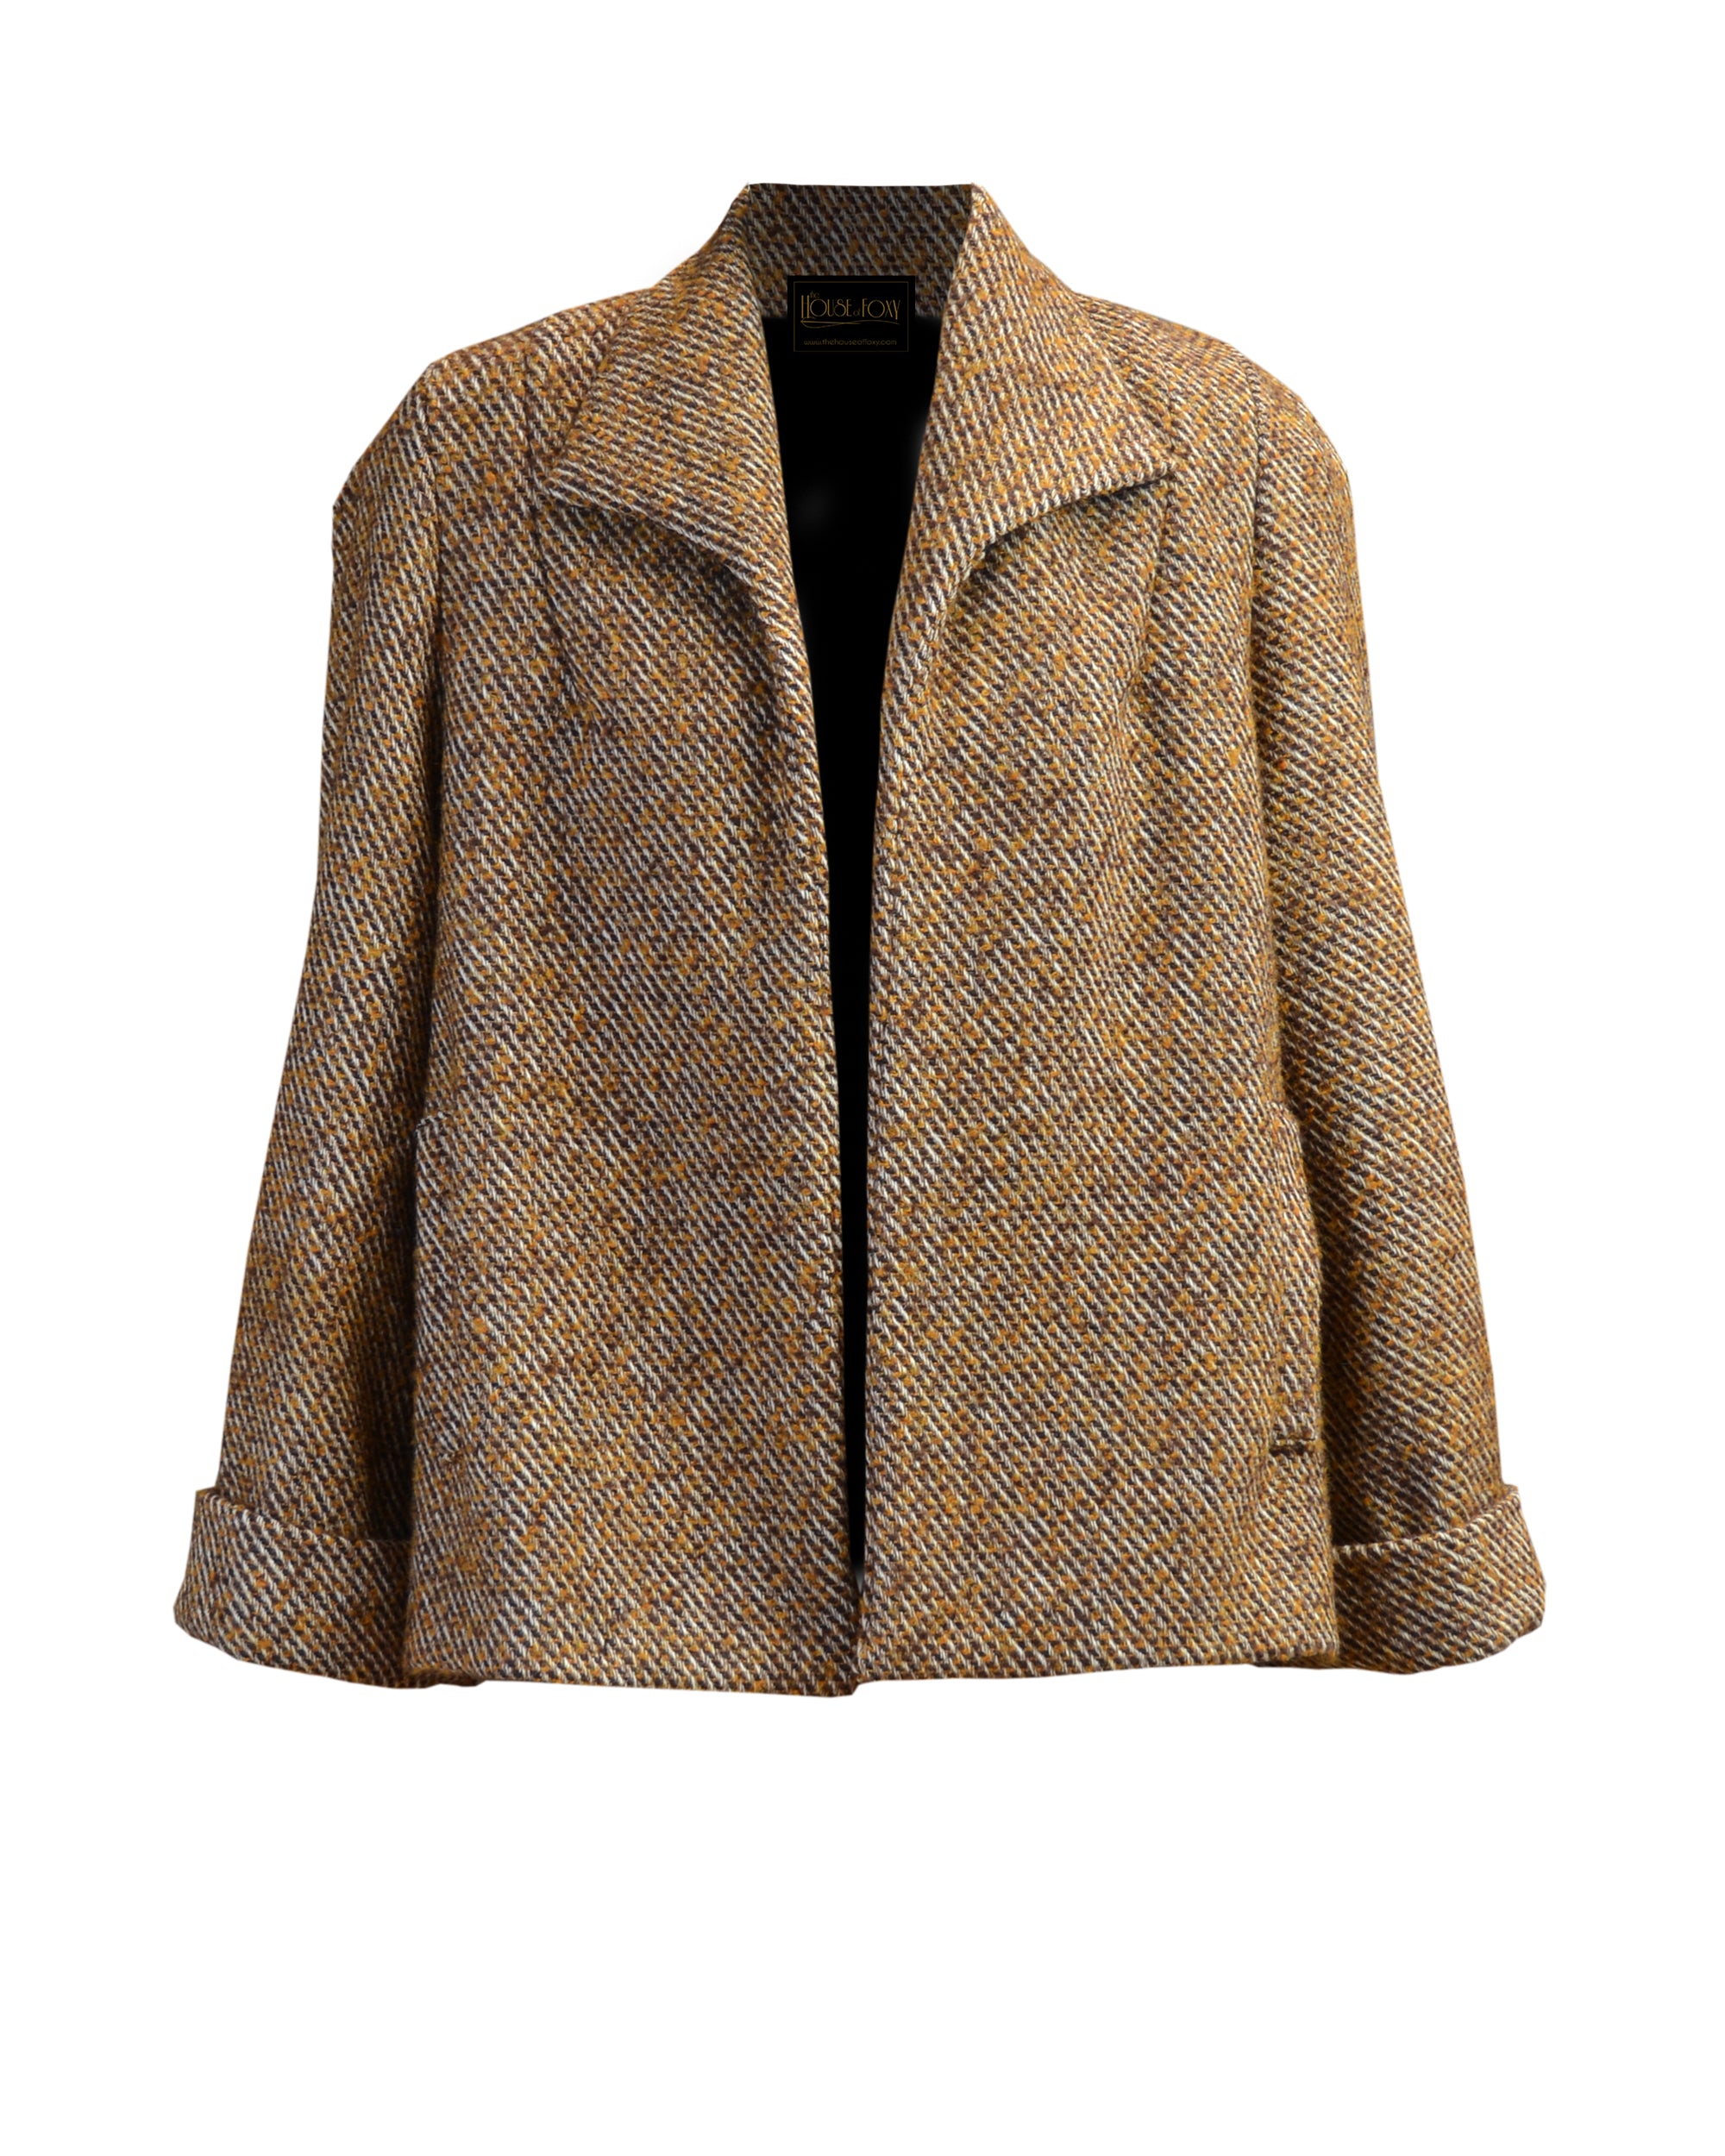 40s/50s Swing Coat in Caramel Wool Blend